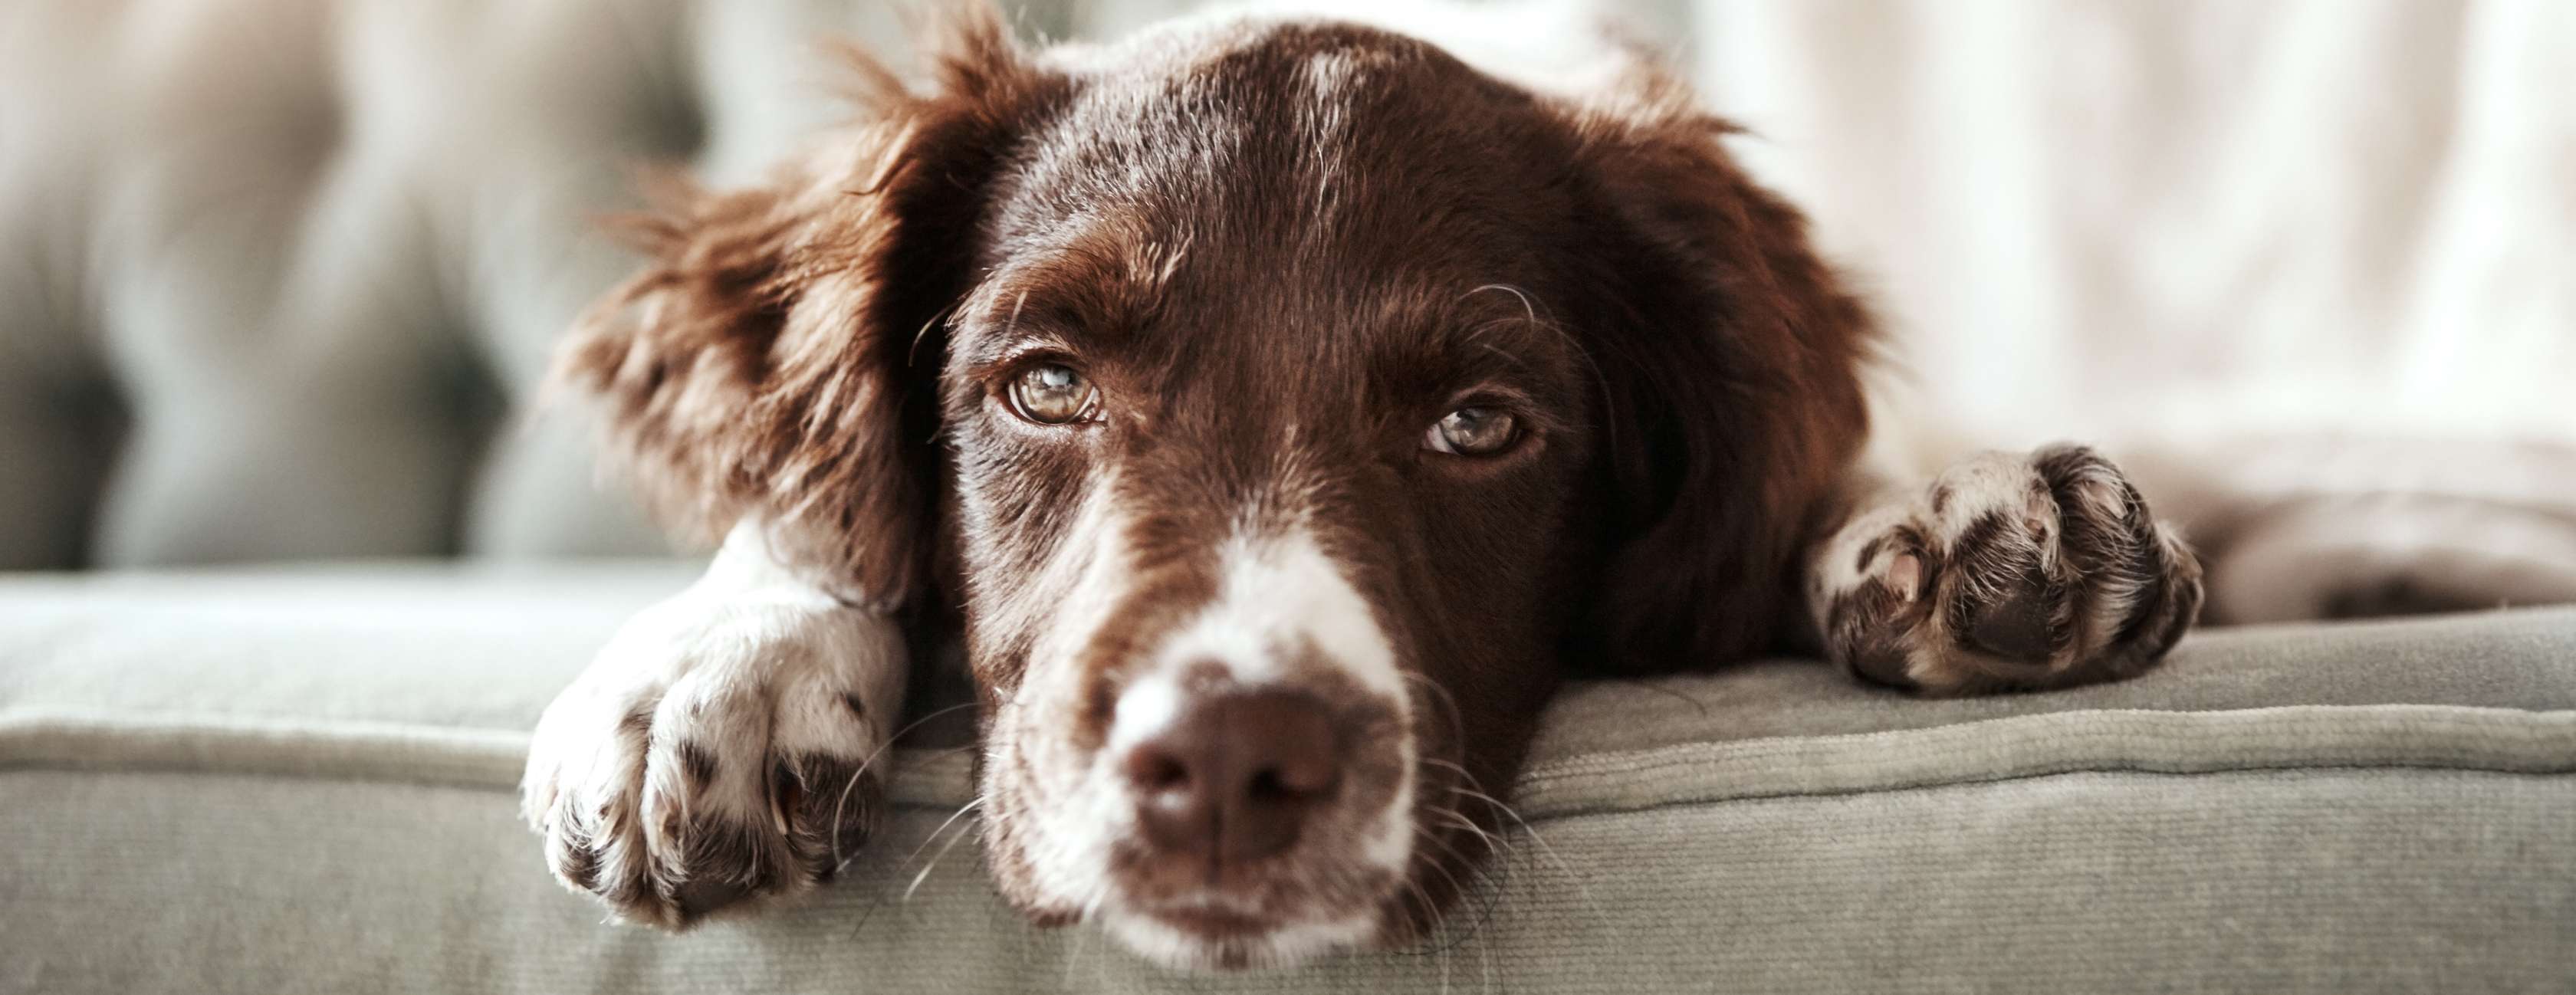 Allianz - Ein mit Leishmaniose infizierter Hund liegt schlapp auf dem Sofa